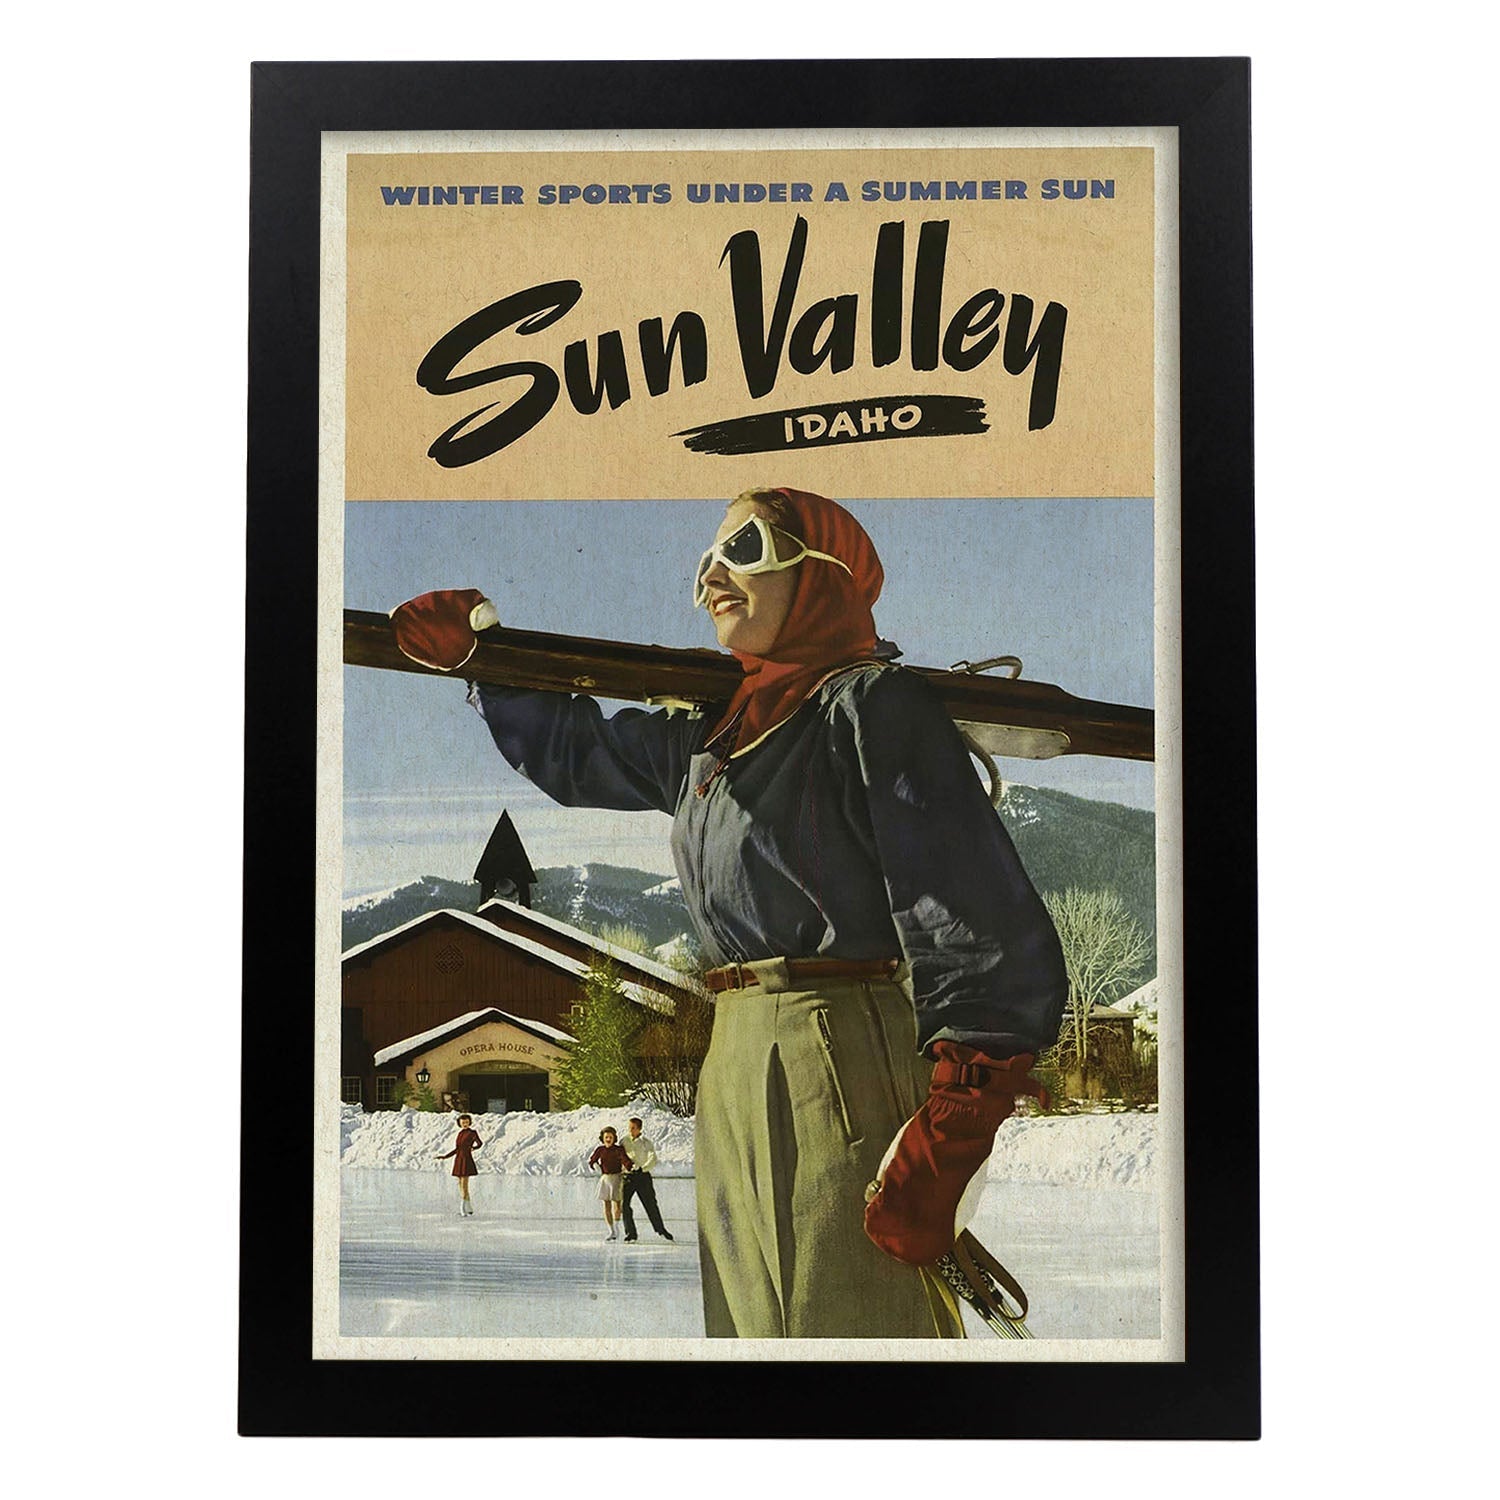 Poster Vintage. Cartel Vintage de América. Valle del Sol, Idaho.-Artwork-Nacnic-A3-Marco Negro-Nacnic Estudio SL